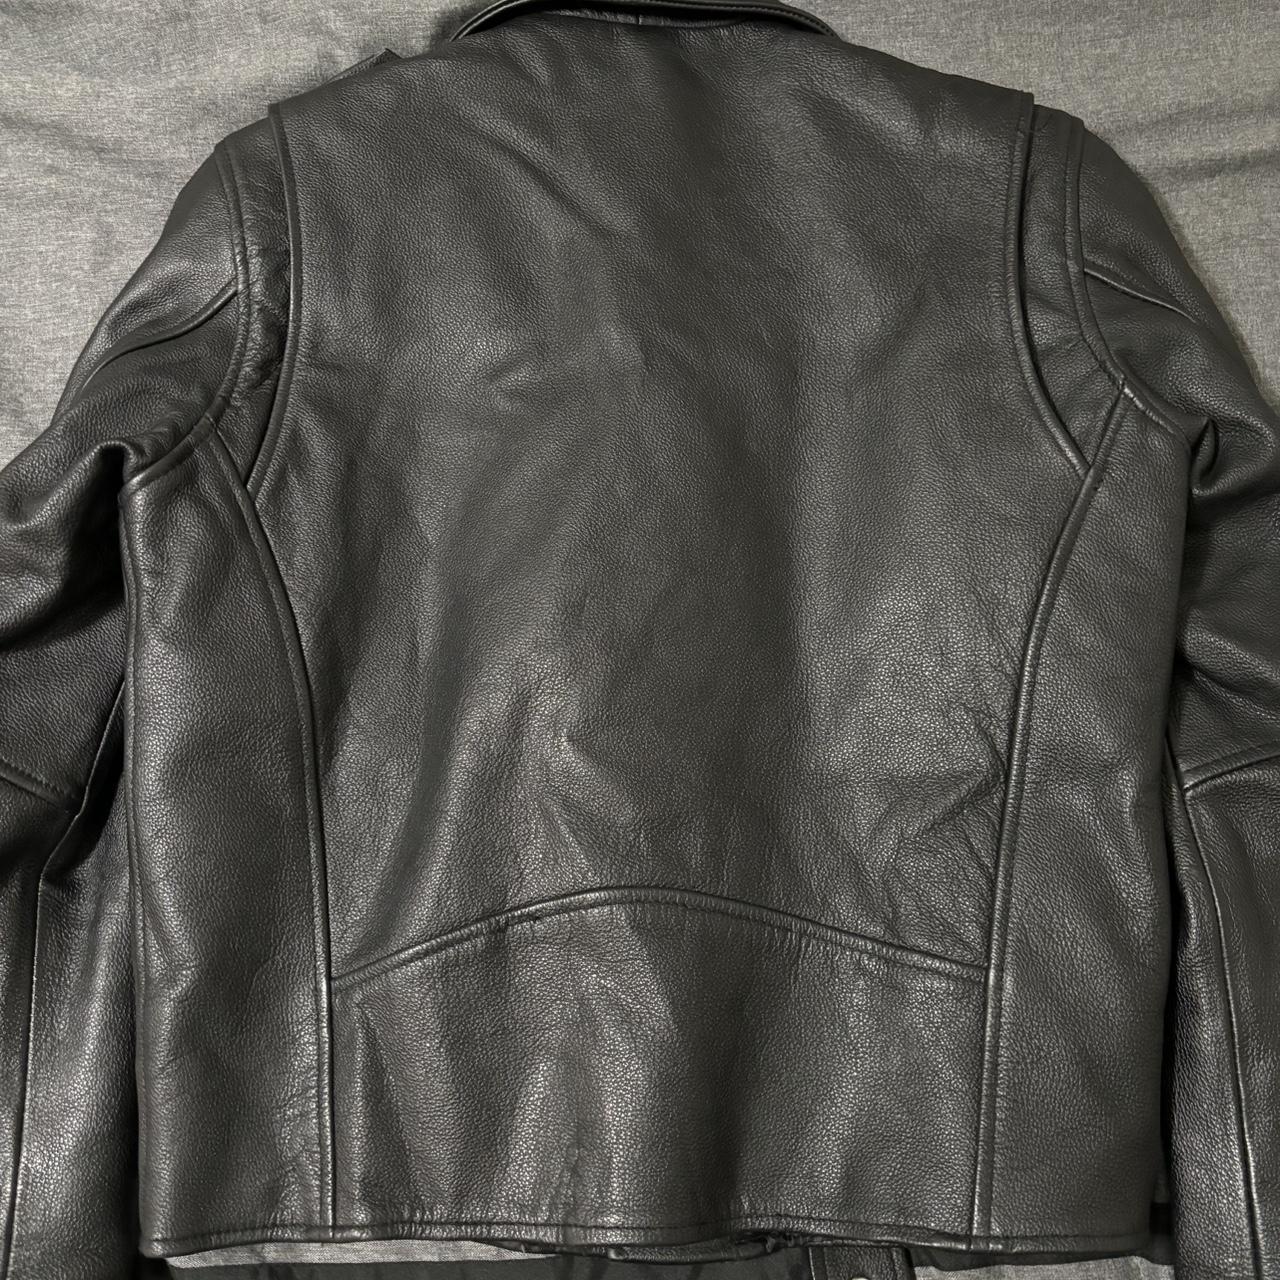 Genuine leather jacket, heavy duty. - Depop